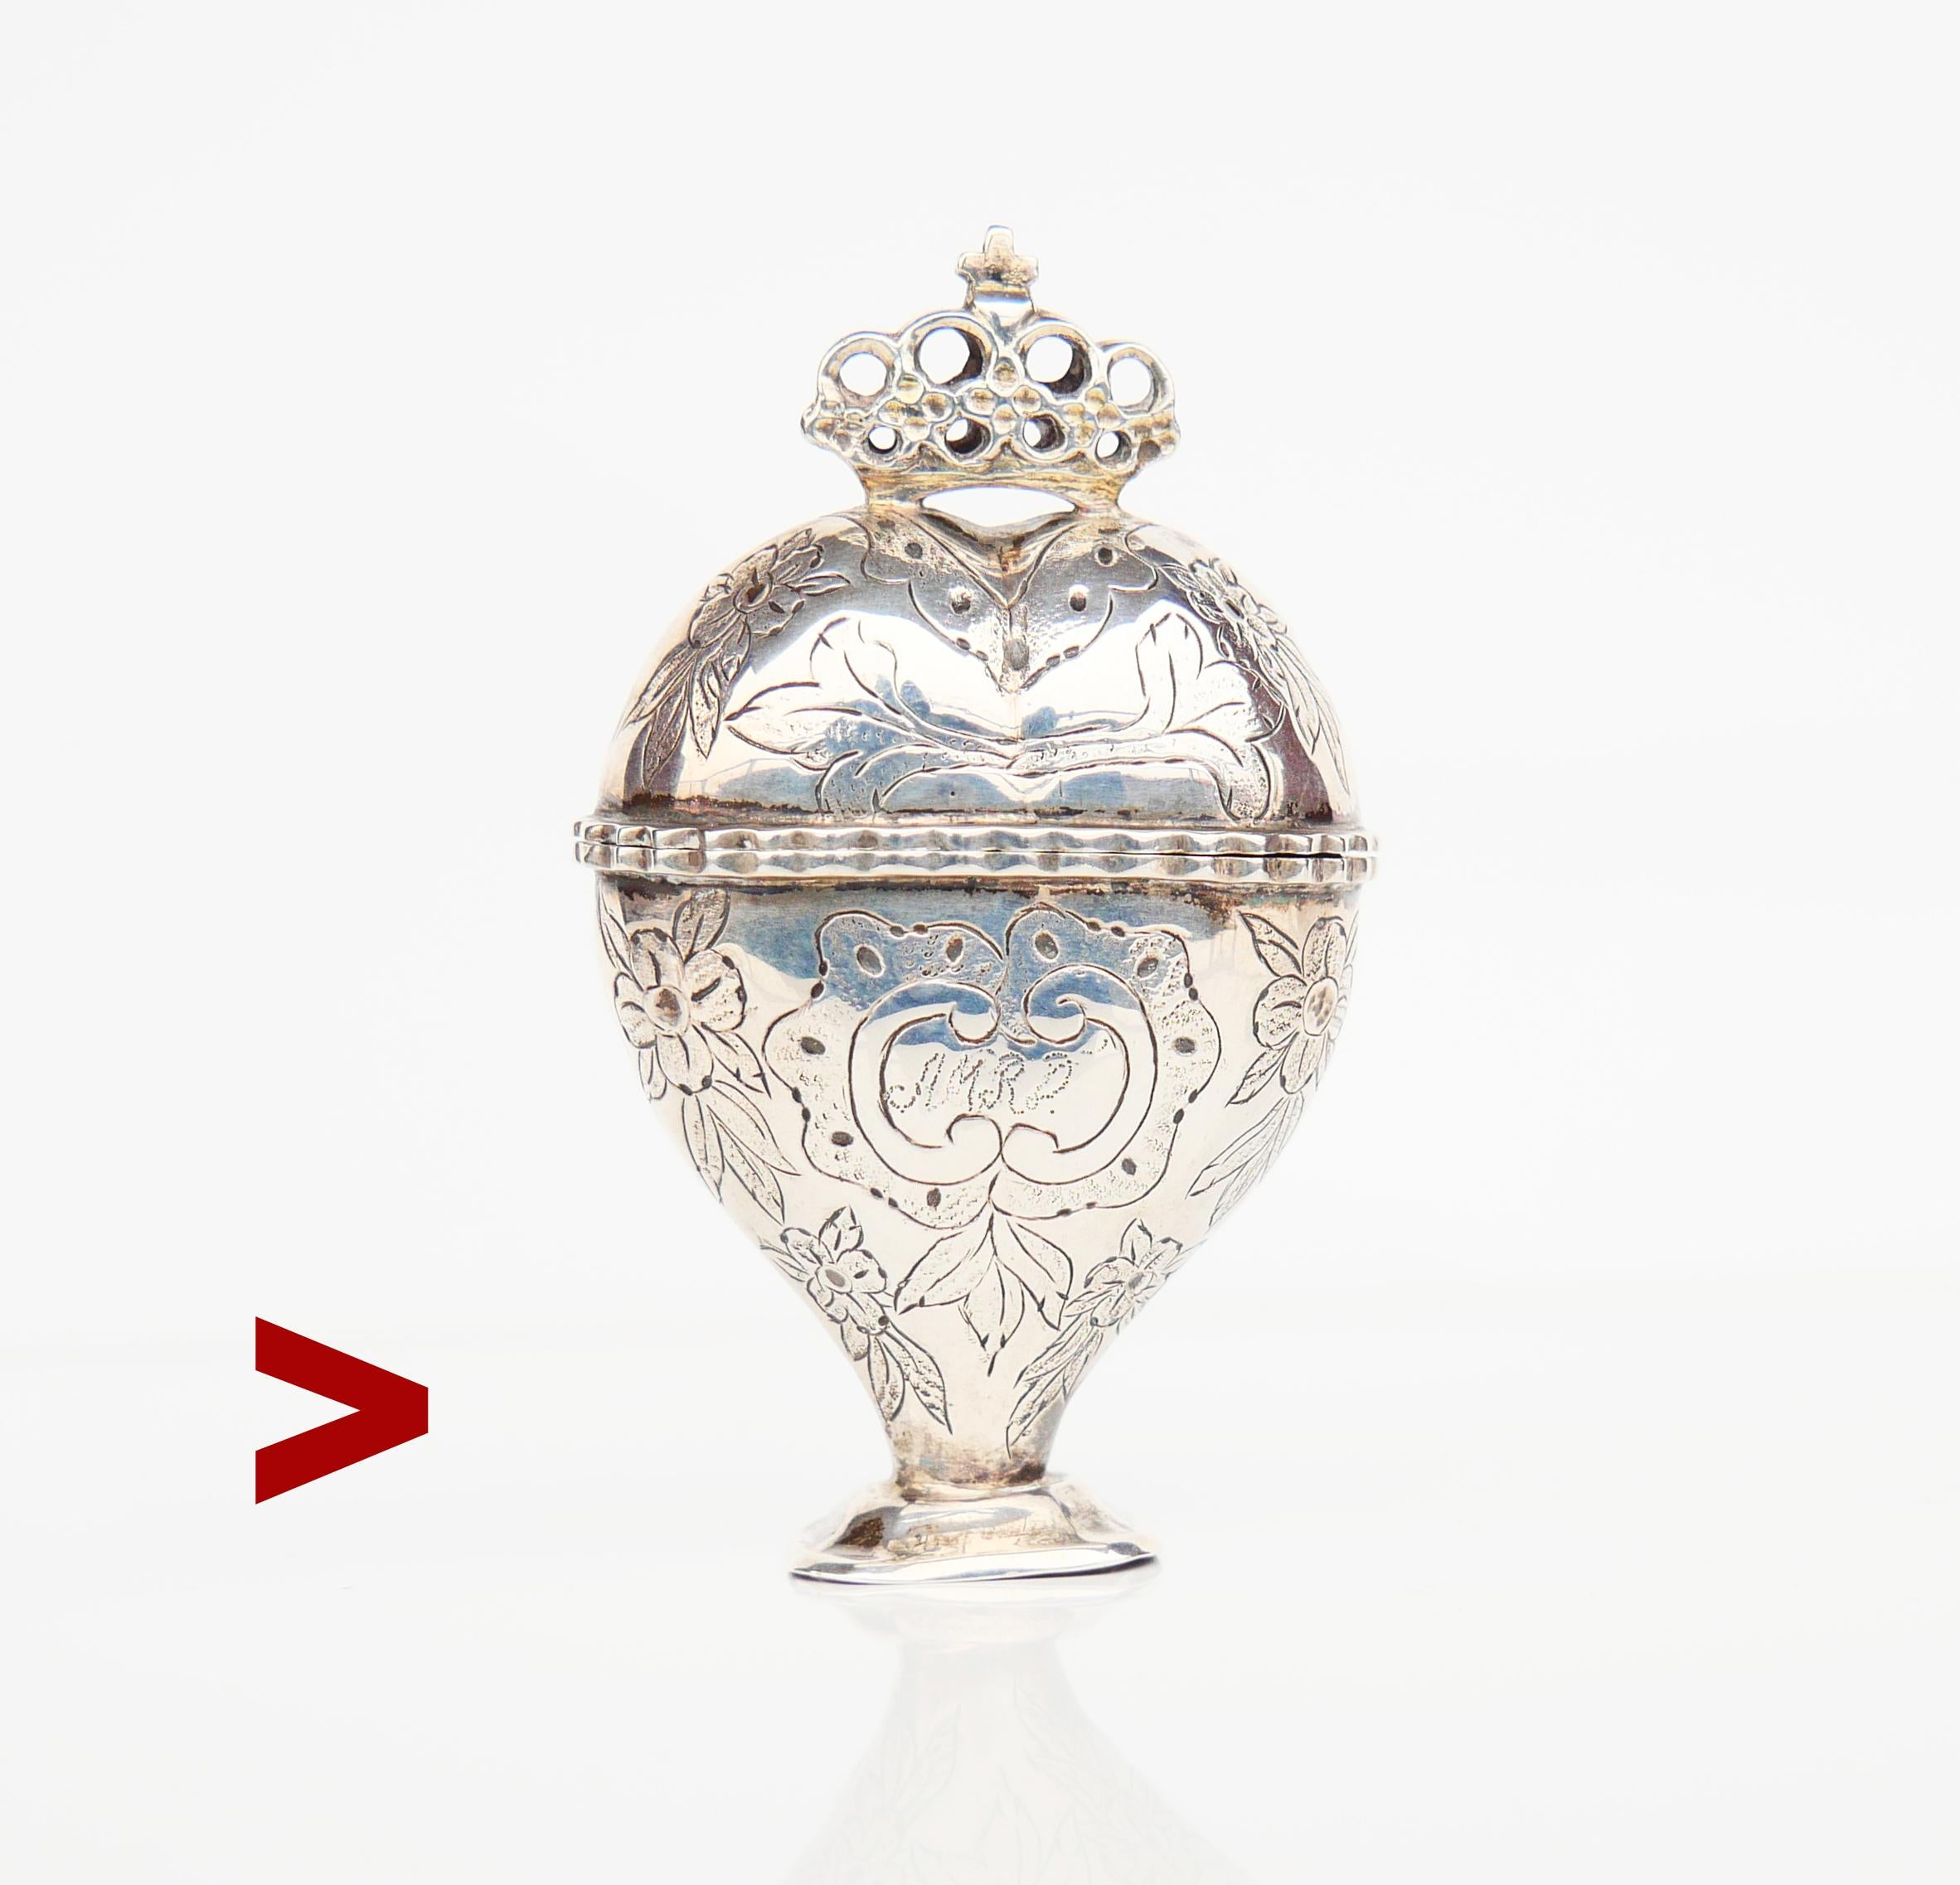 Alte dänische Eitelkeits- oder Pillendose mit Scharnier aus dem frühen 19. Jahrhundert in der ungewöhnlichen Form eines Herzens mit Krone auf der Oberseite. Handgehämmerte und gravierte Blumenornamente auf beiden Seiten. Vorderseite mit